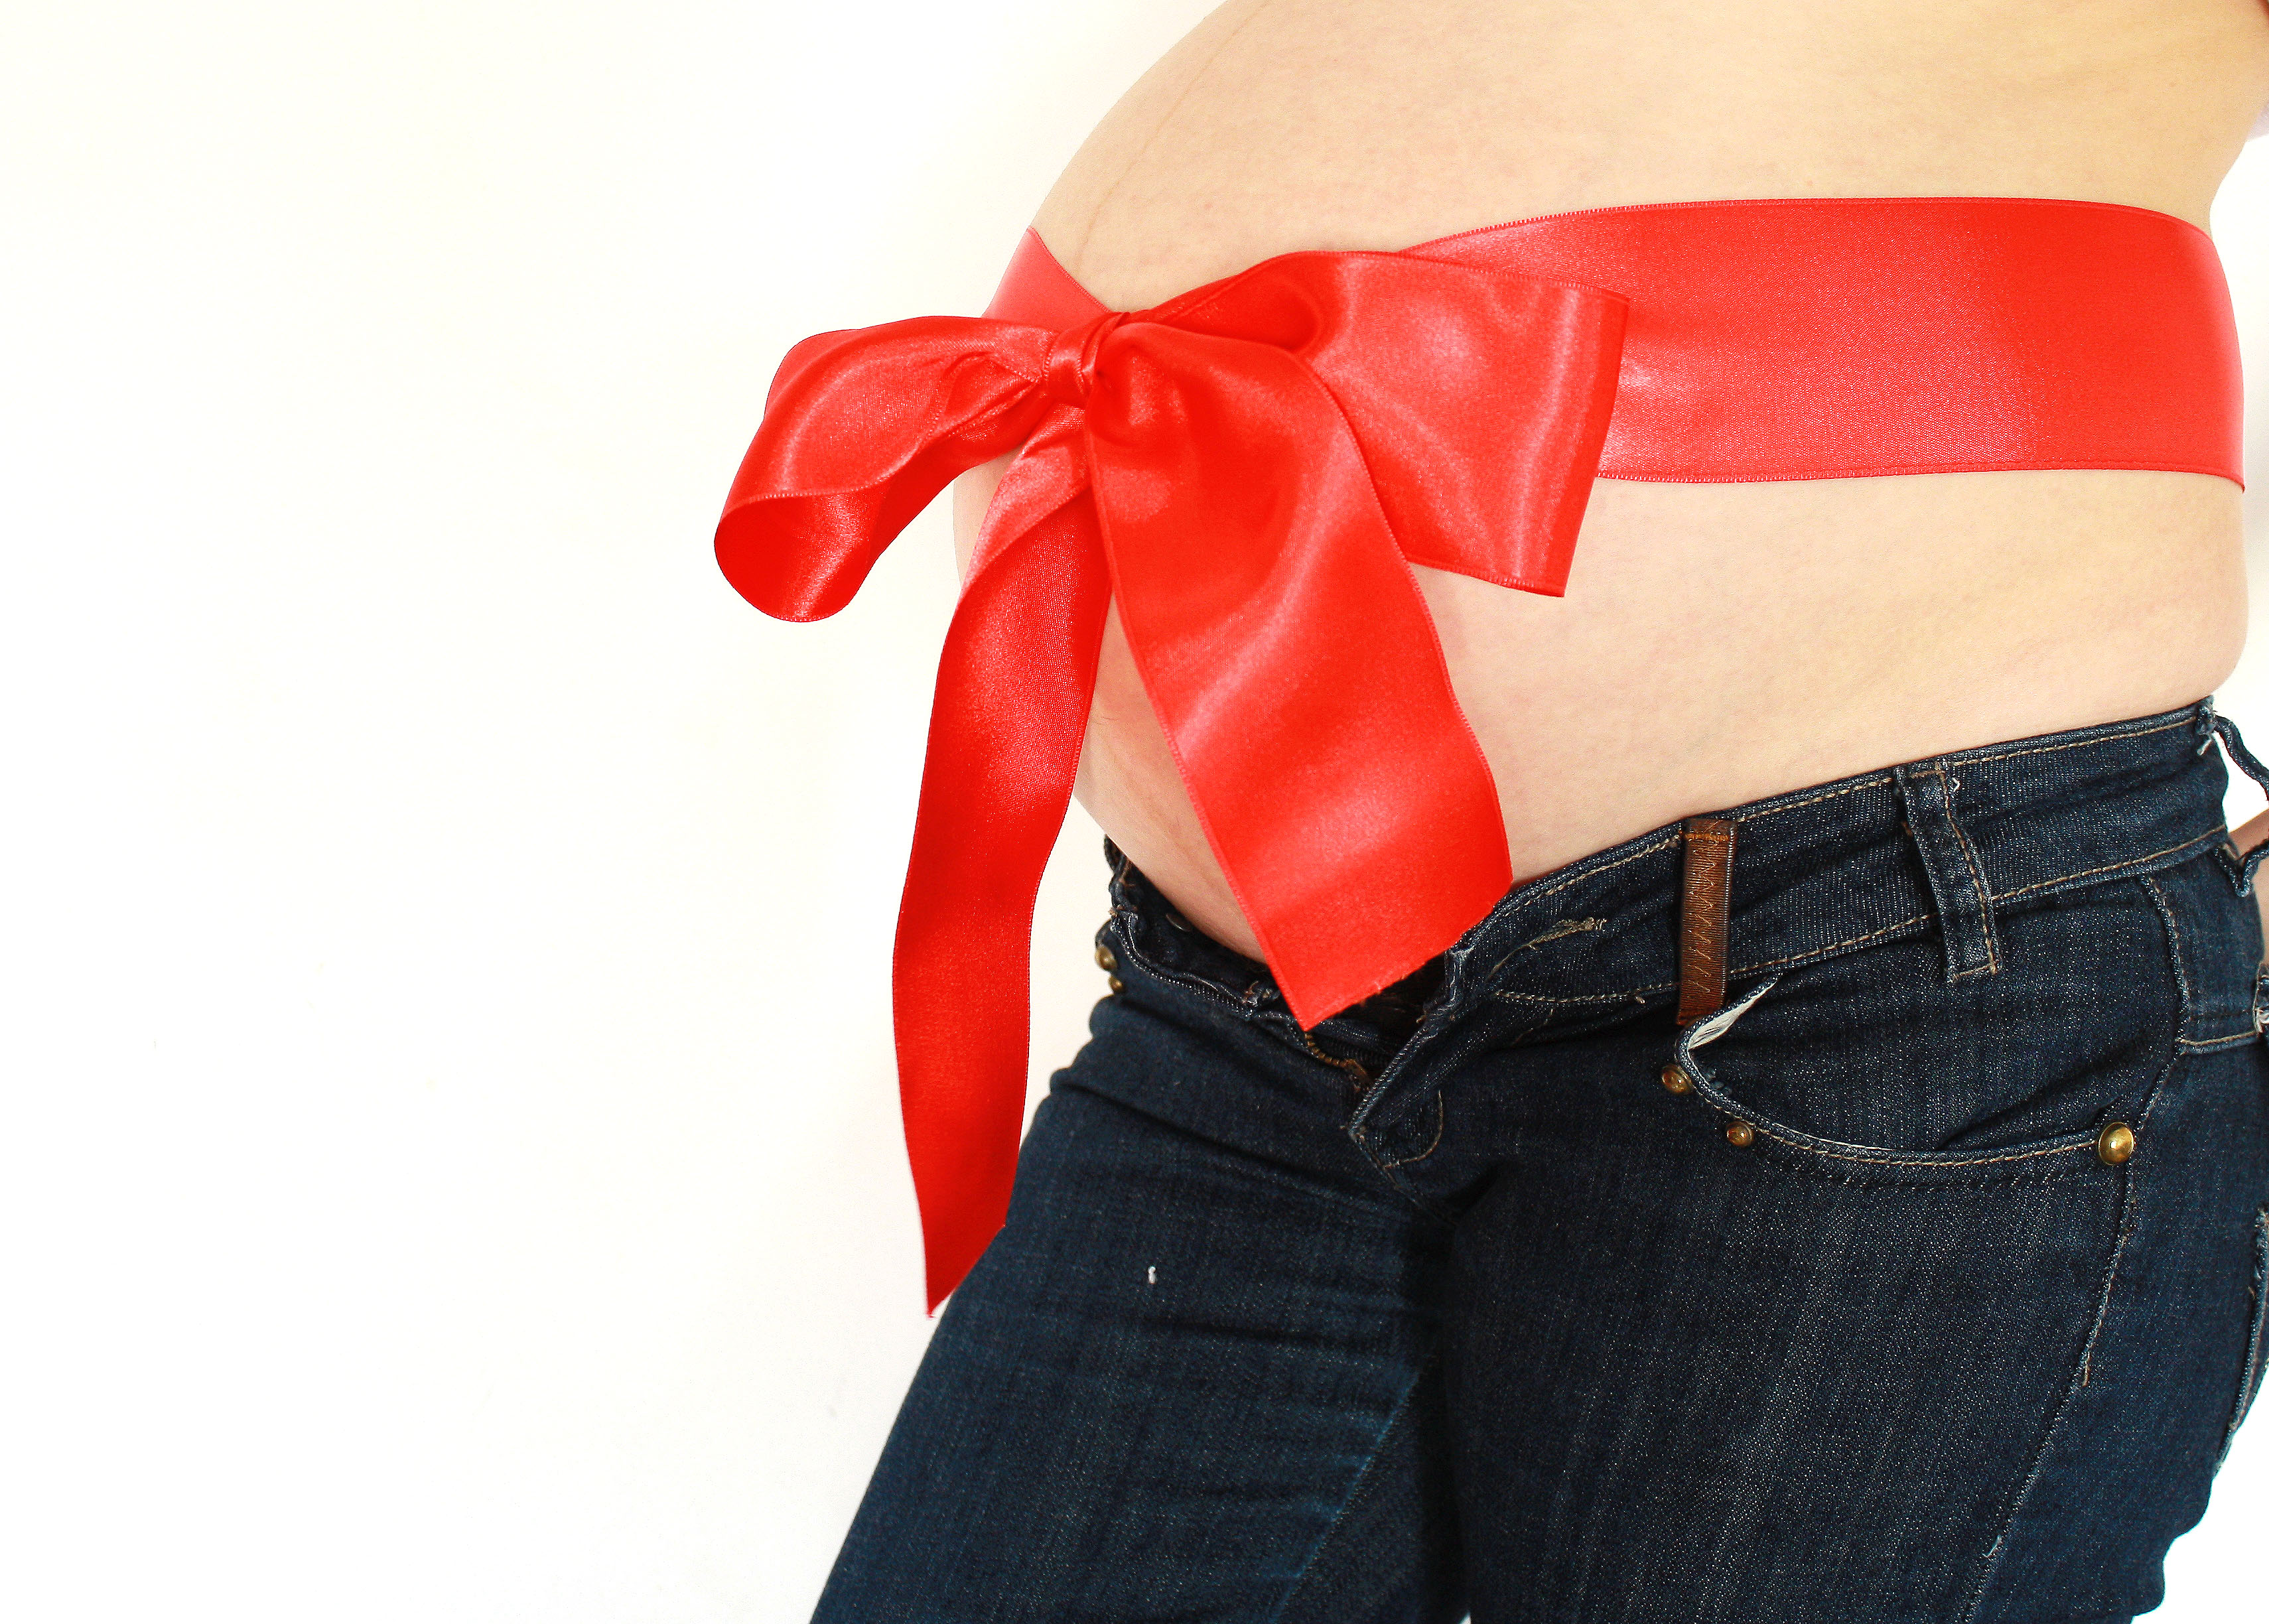 Умерената диета по време на бременност е безопасна